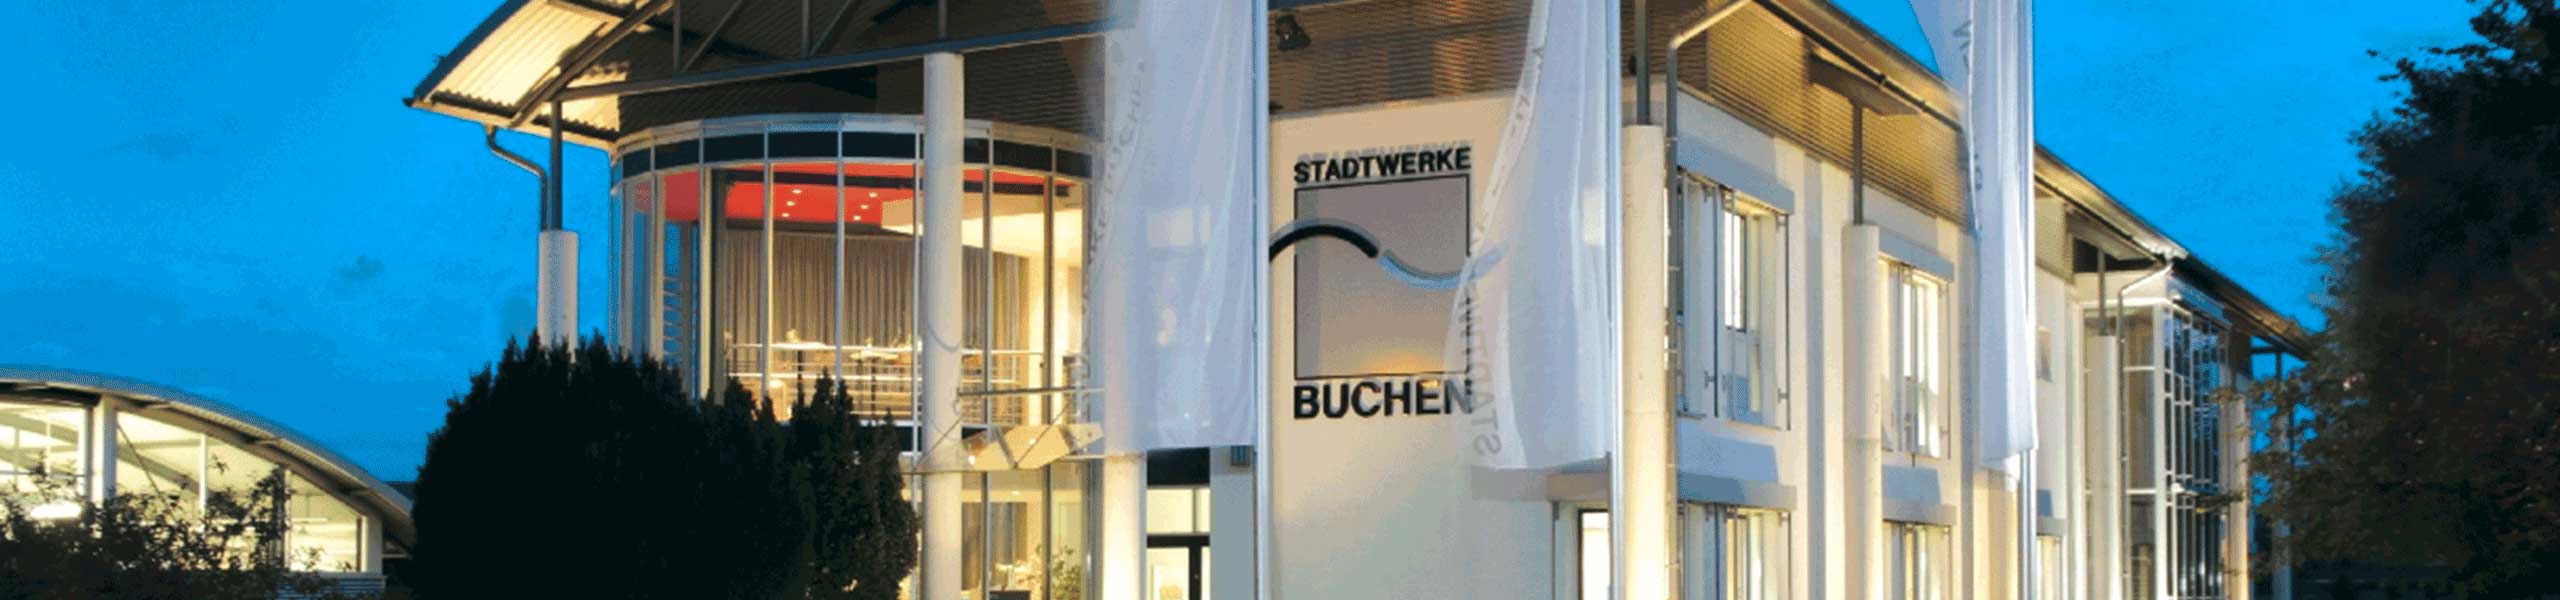 Stadtwerke Buchen GmbH & Co KG - Anlagenmechaniker (m/w/d) Versorgungstechnik